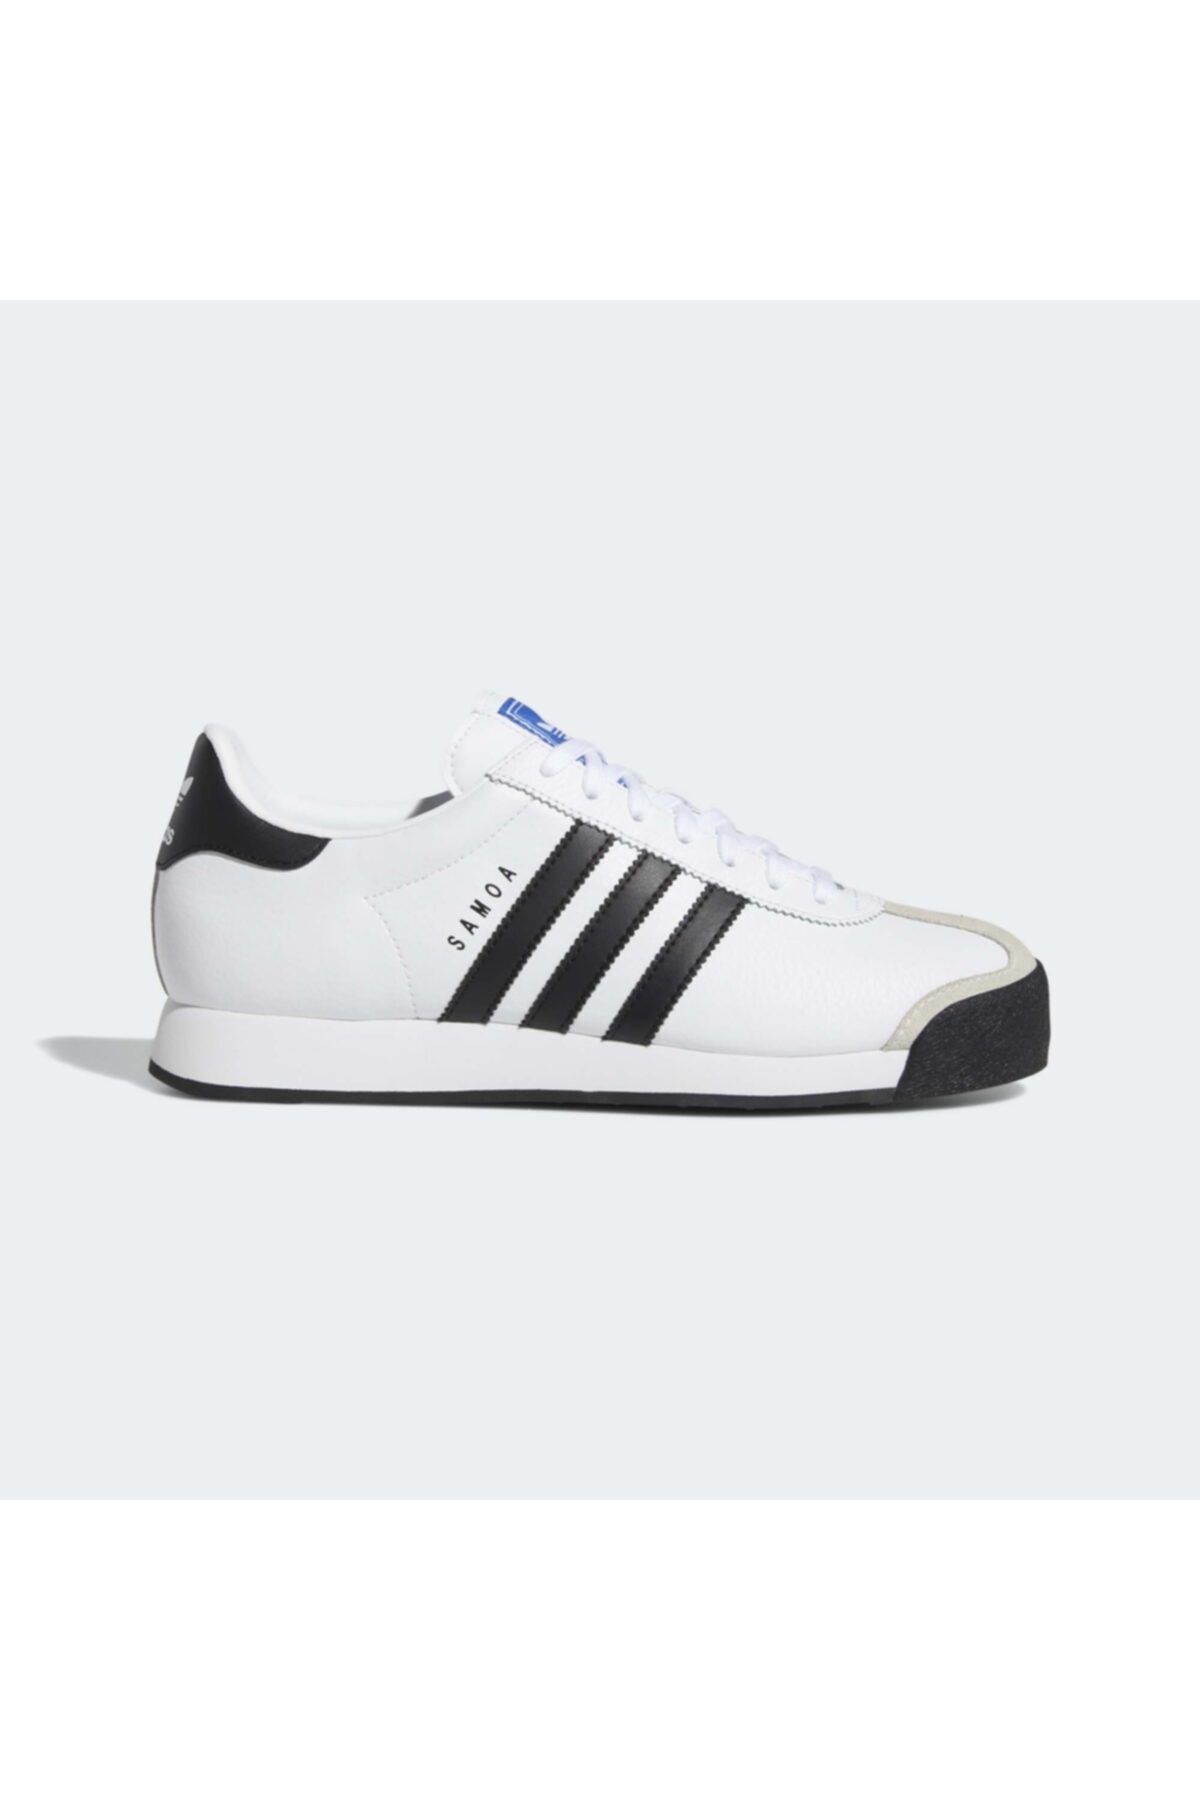 adidas Samoa Beyaz Spor Ayakkabı (675033)